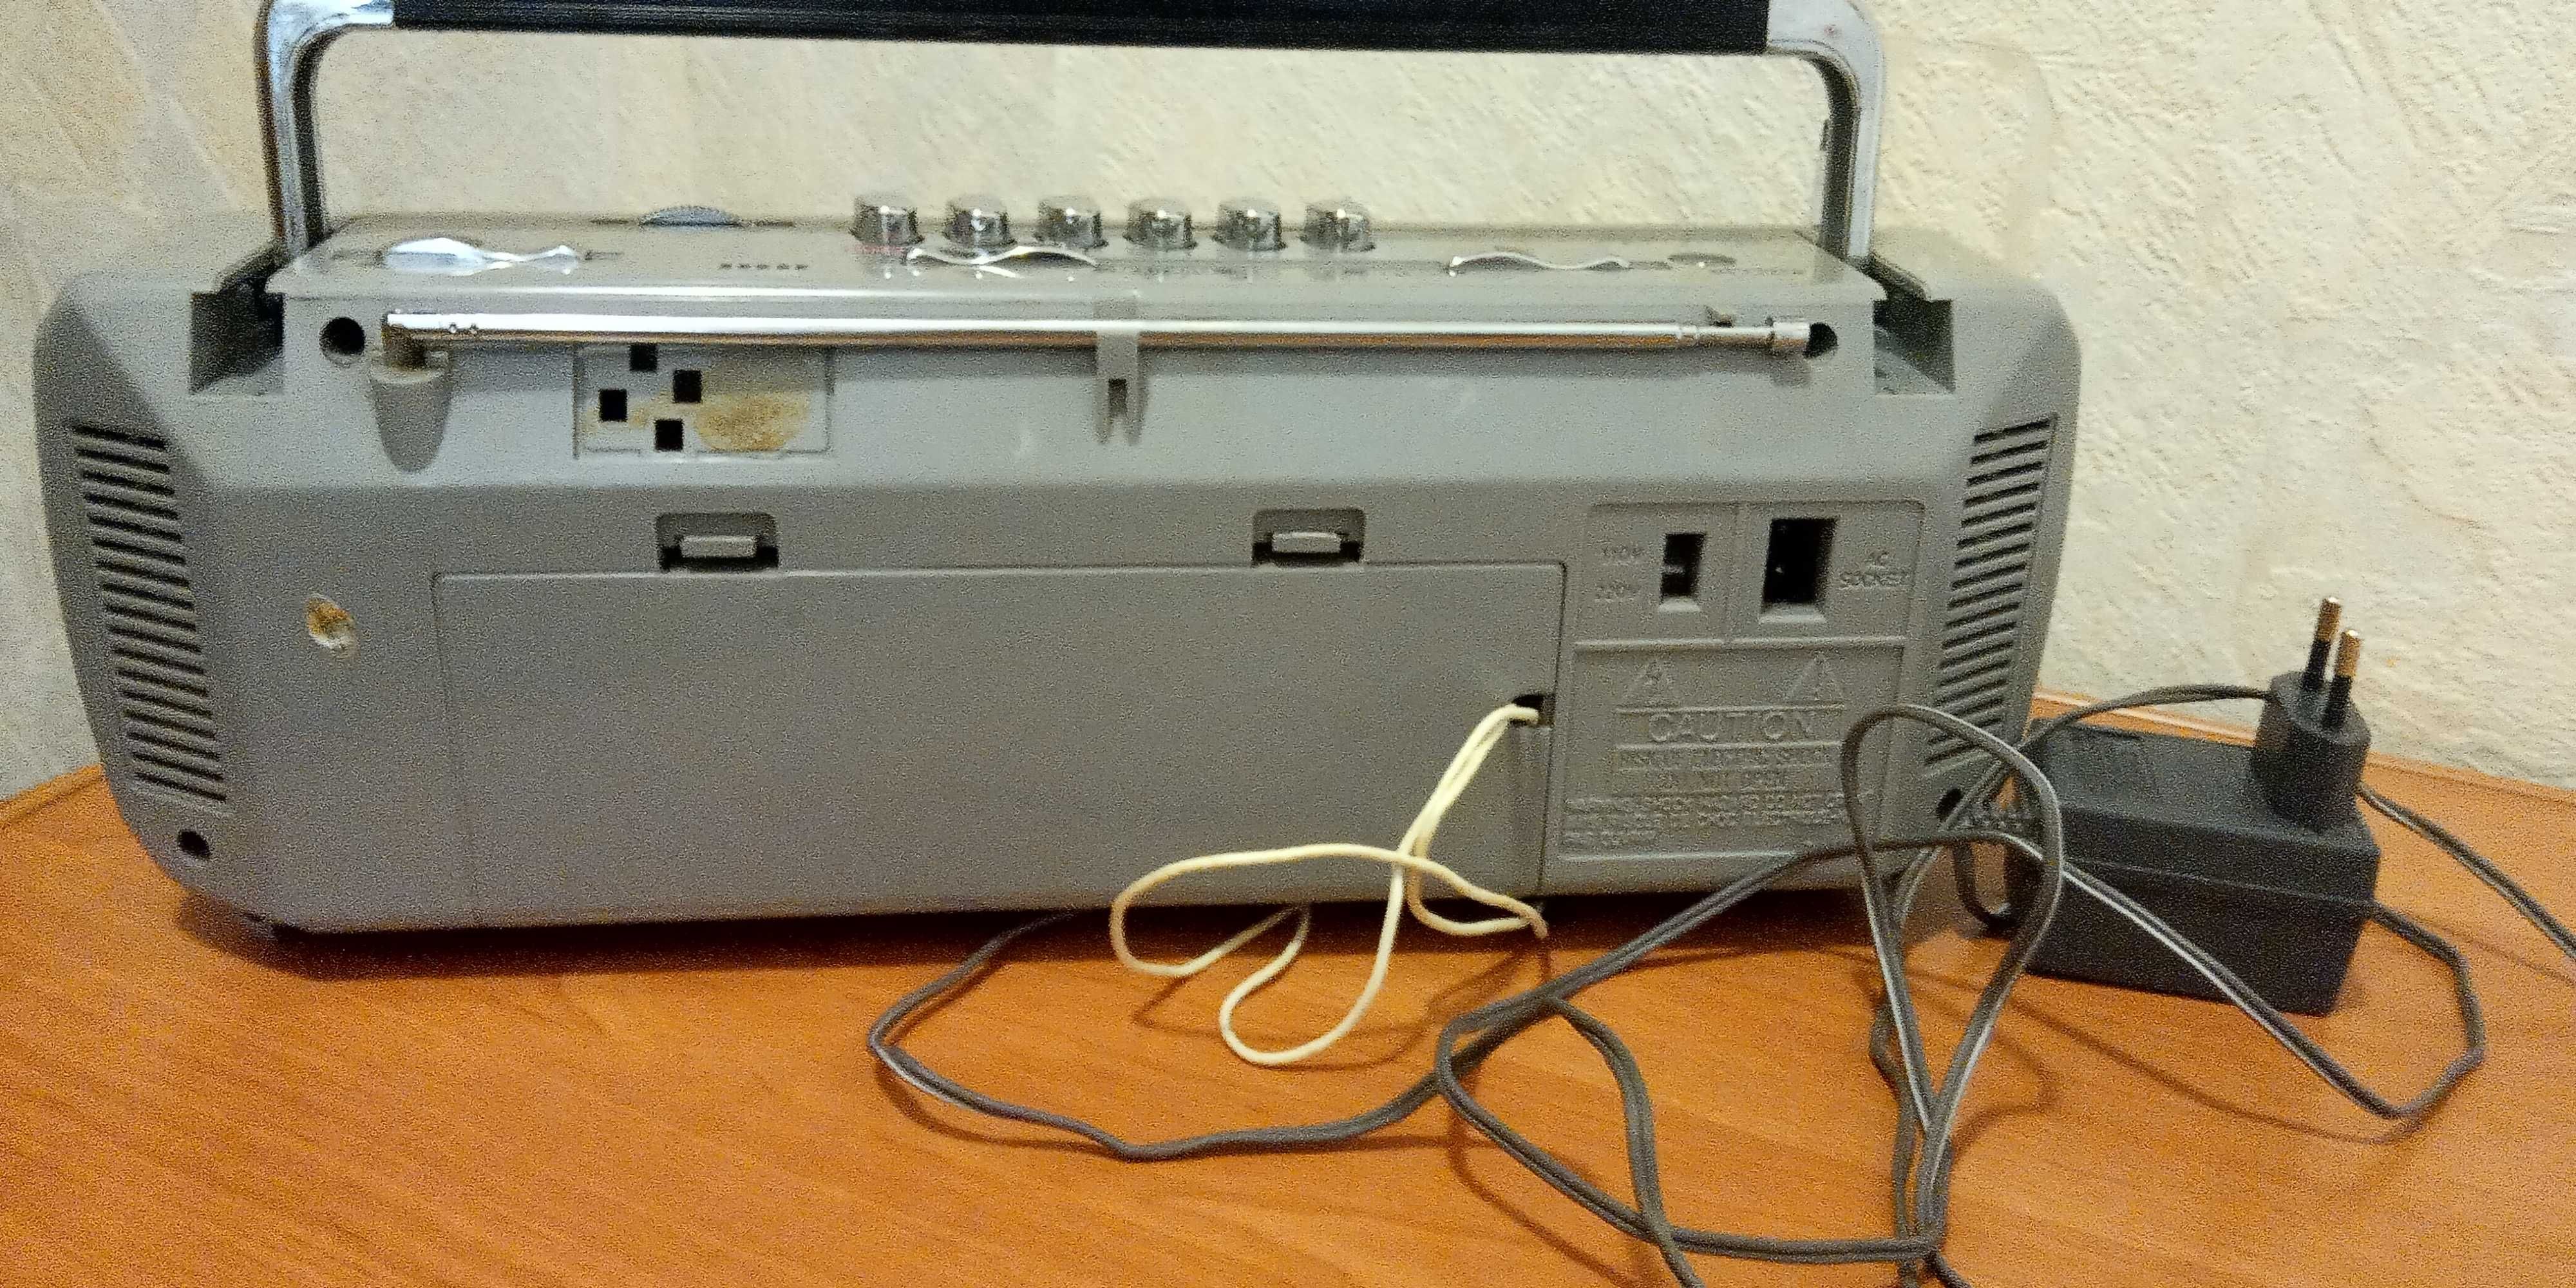 Satellite radio cassette recorder disco